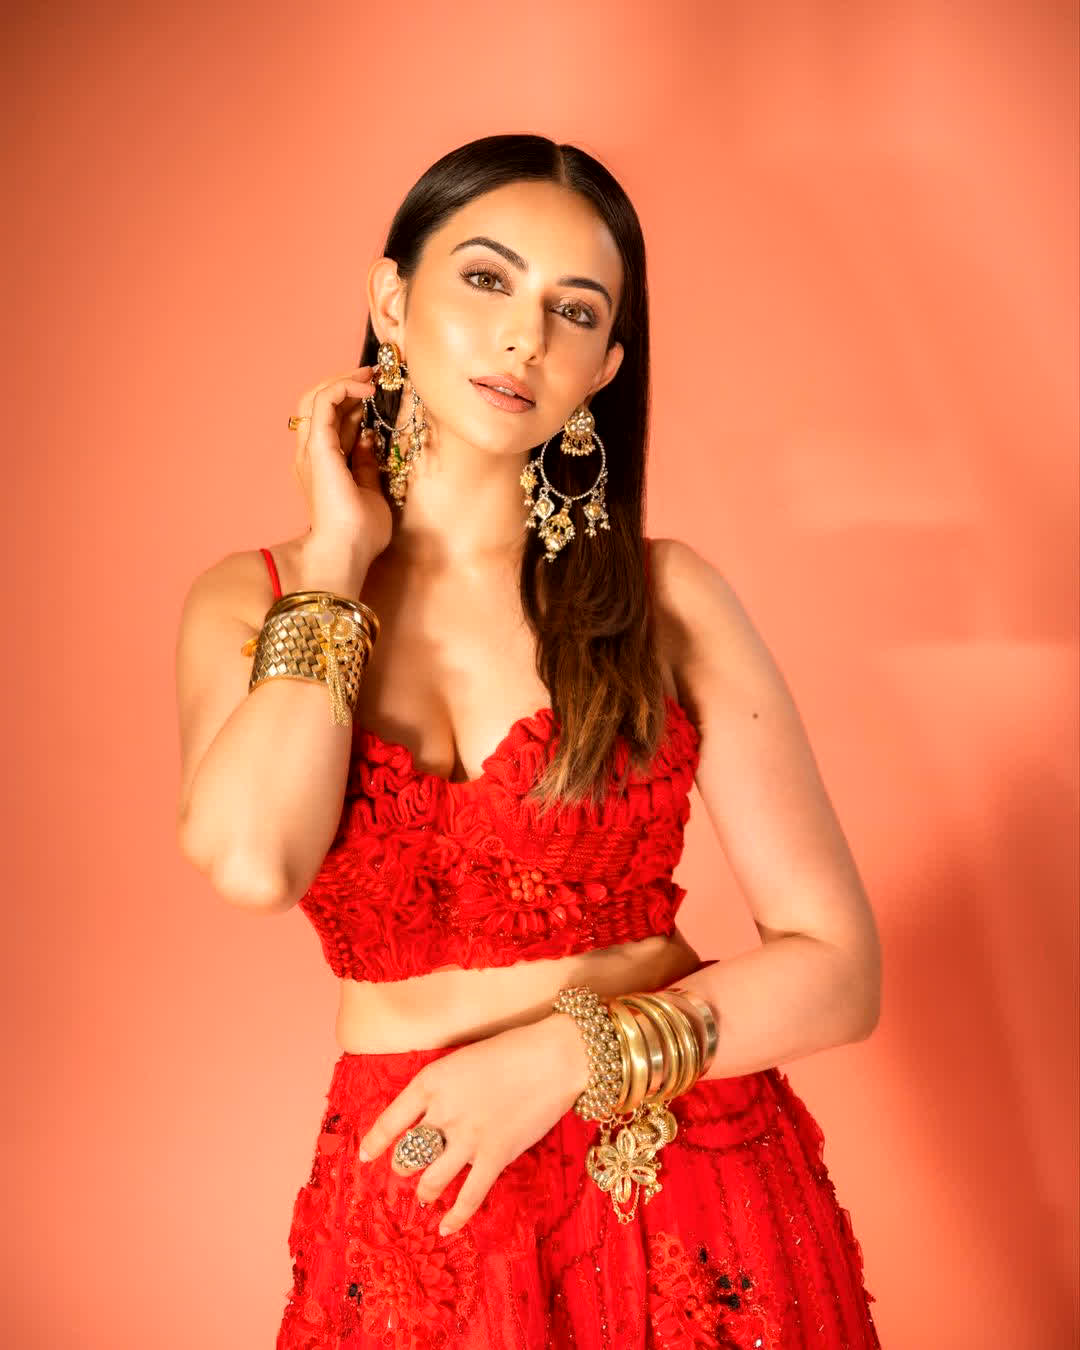 हाल ही में शेयर की गई तस्वीरों में रकुल प्रीत ने लाल रंग का खूबसूरत आउटफिट पहना हुआ है, जिसमें वो बला की खूबसूरत लग रही है।